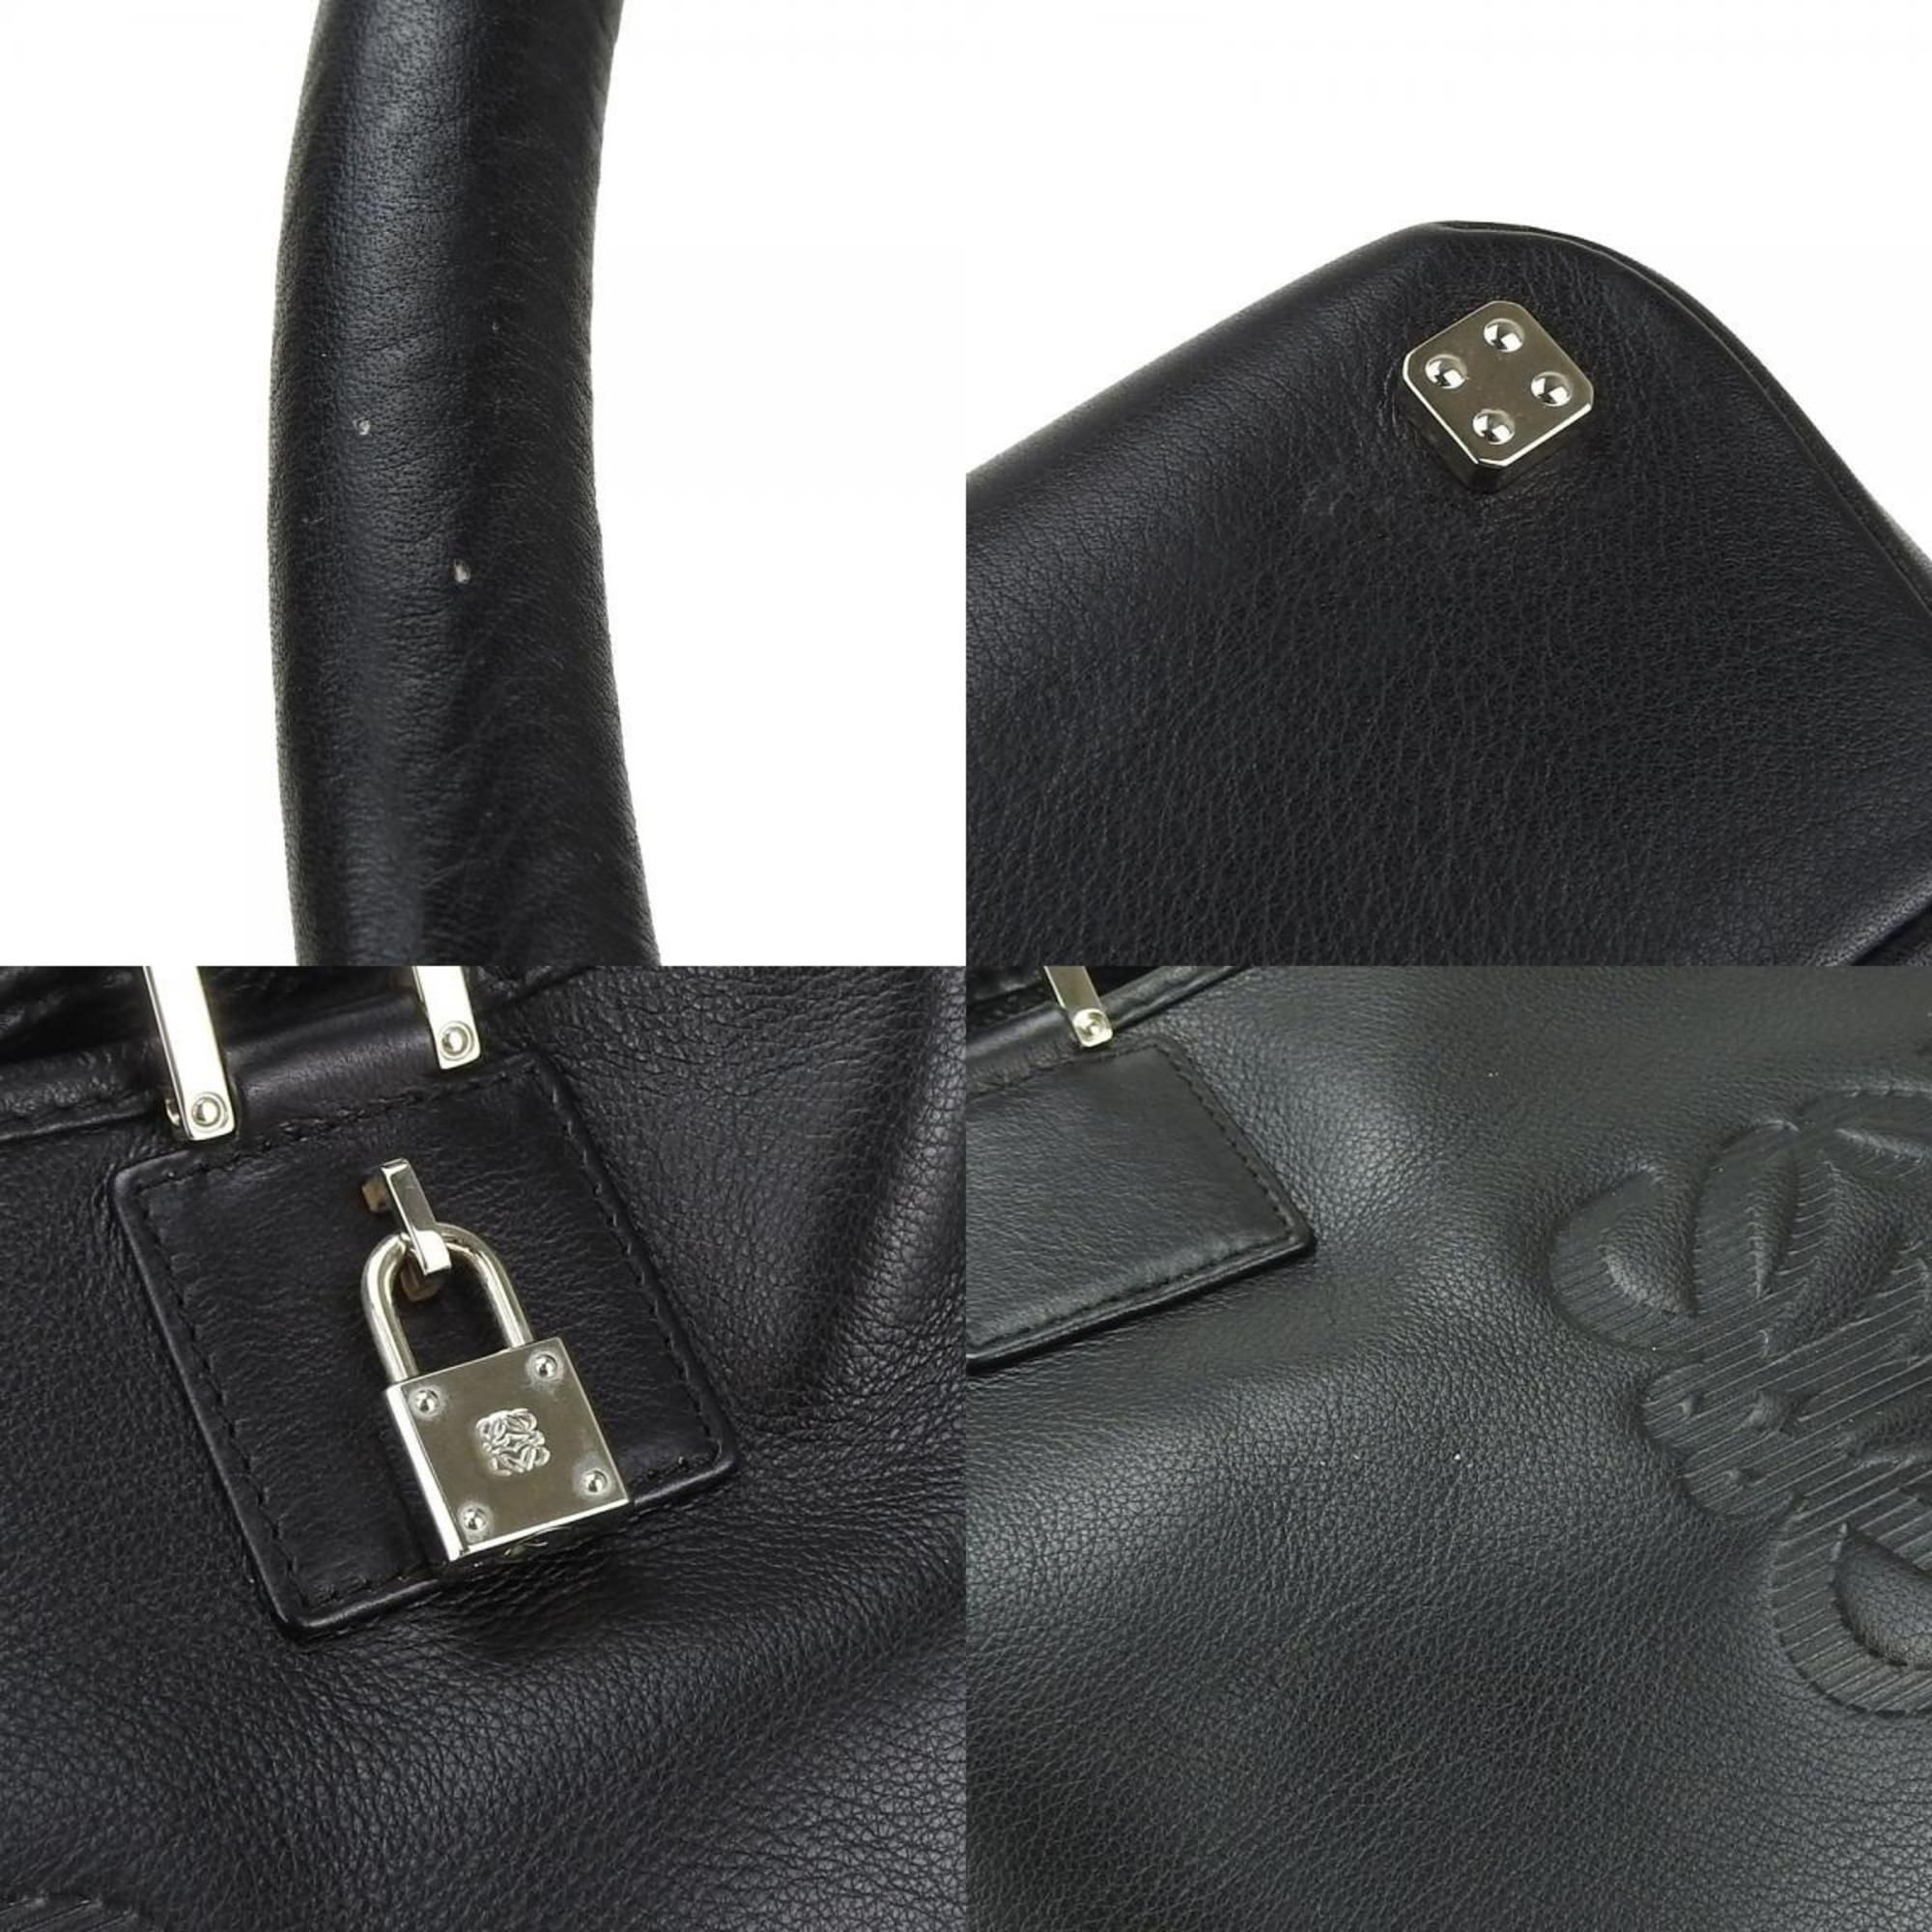 LOEWE Handbag Fusta Leather Black Anagram Ladies